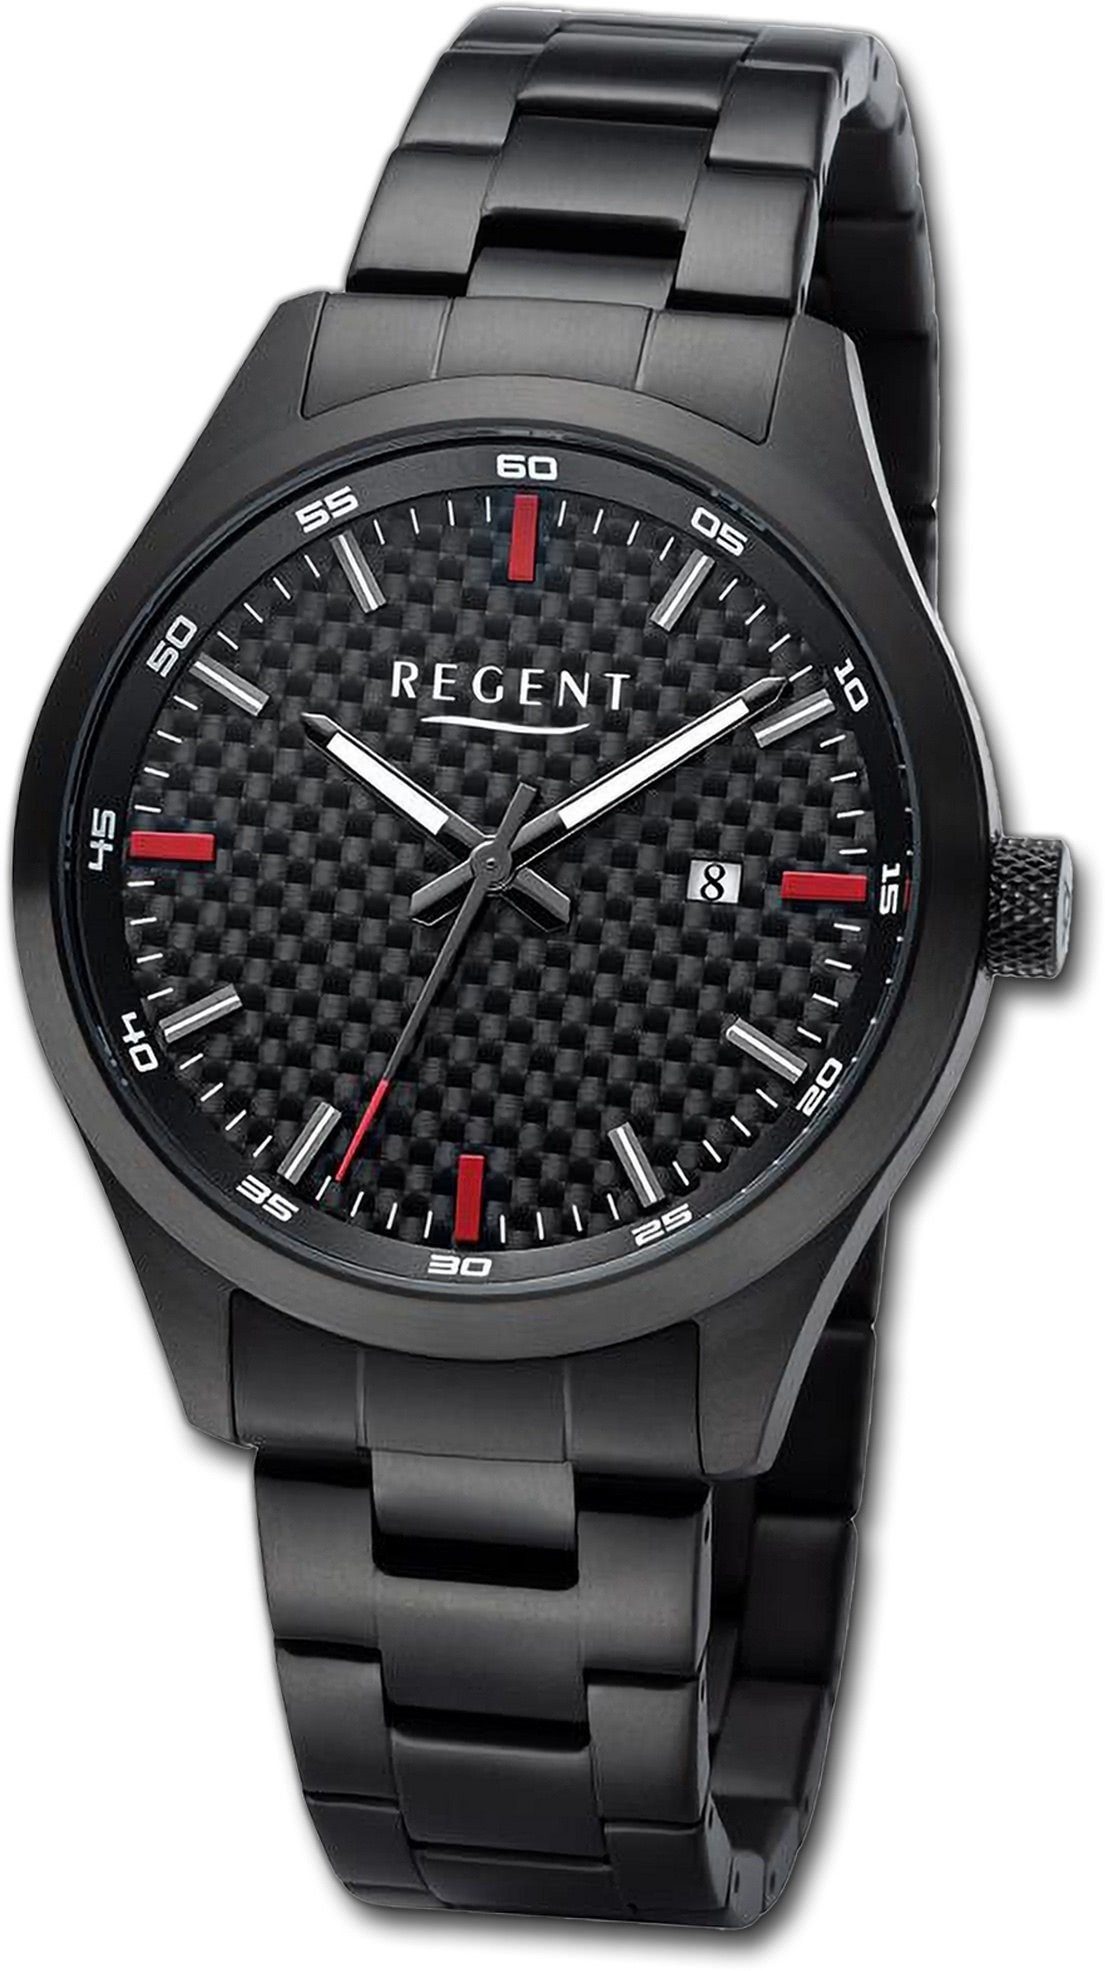 Titanarmband Gehäuse, 42mm) extra rundes Armbanduhr Quarzuhr schwarz, Regent groß Analog, Herrenuhr Regent (ca. Herren